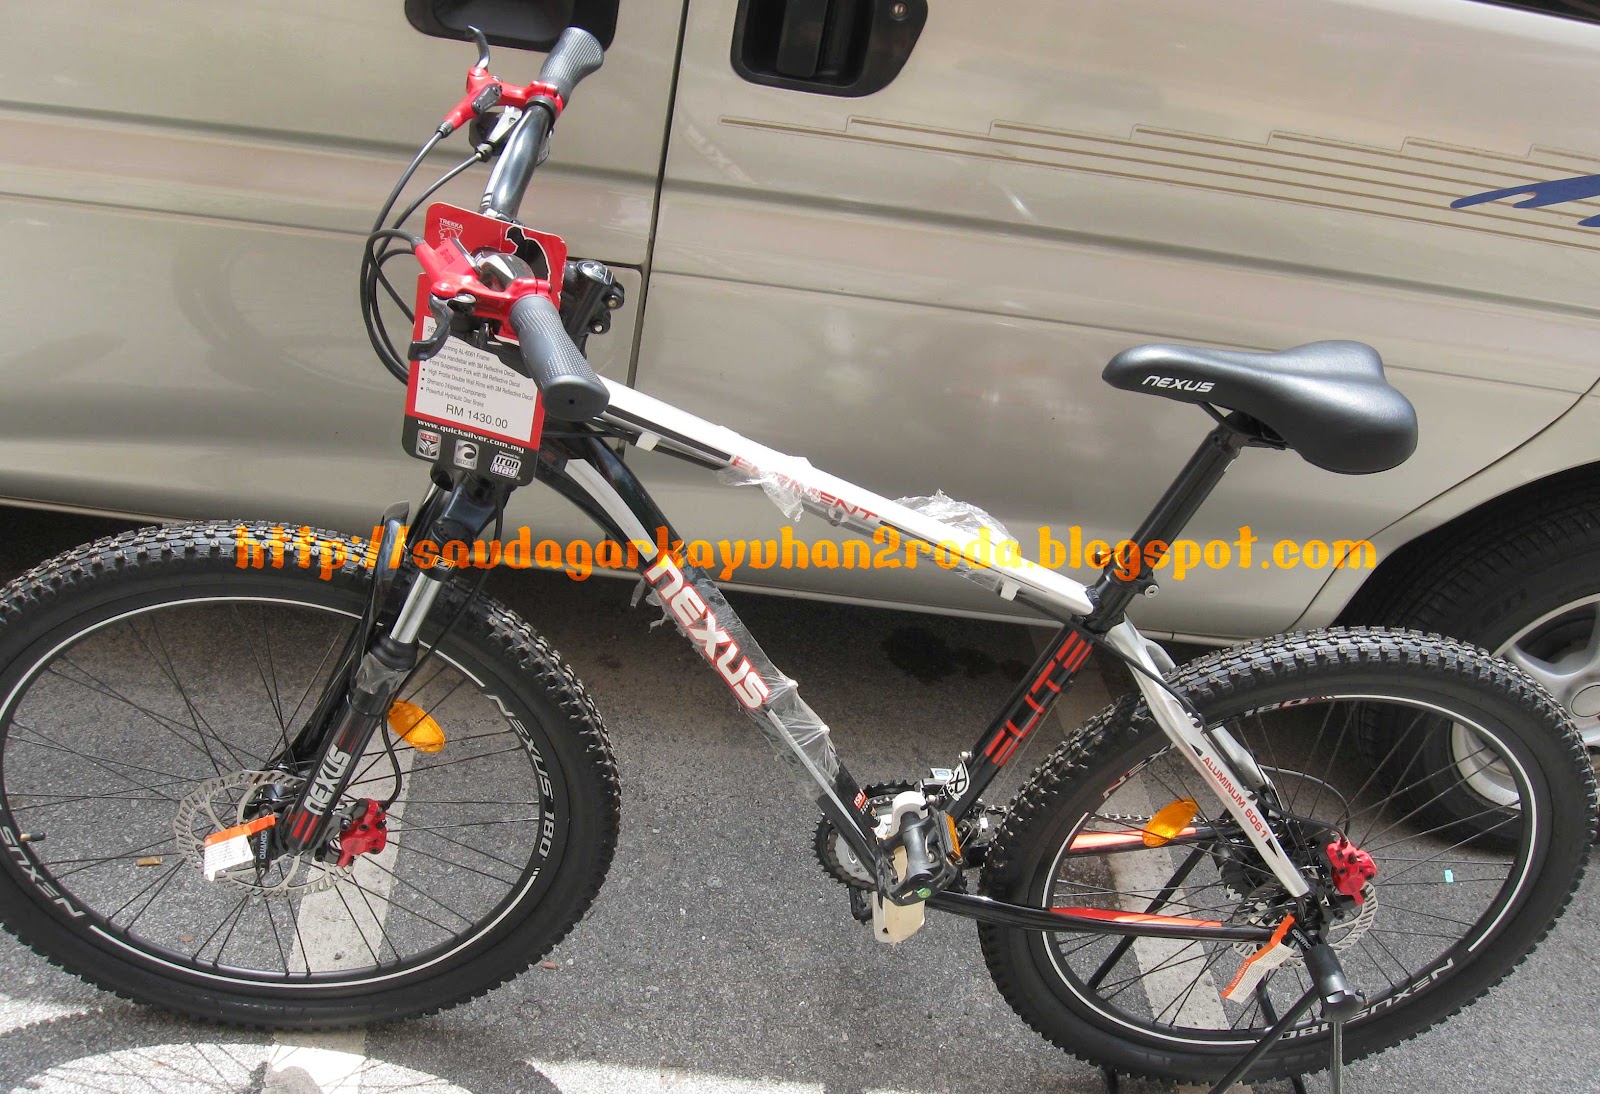 KEDAI BASIKAL SAUDAGAR KAYUHAN 2 RODA - MALAYSIA BICYCLE SHOP: Nexus Mountain Bike (Sold)